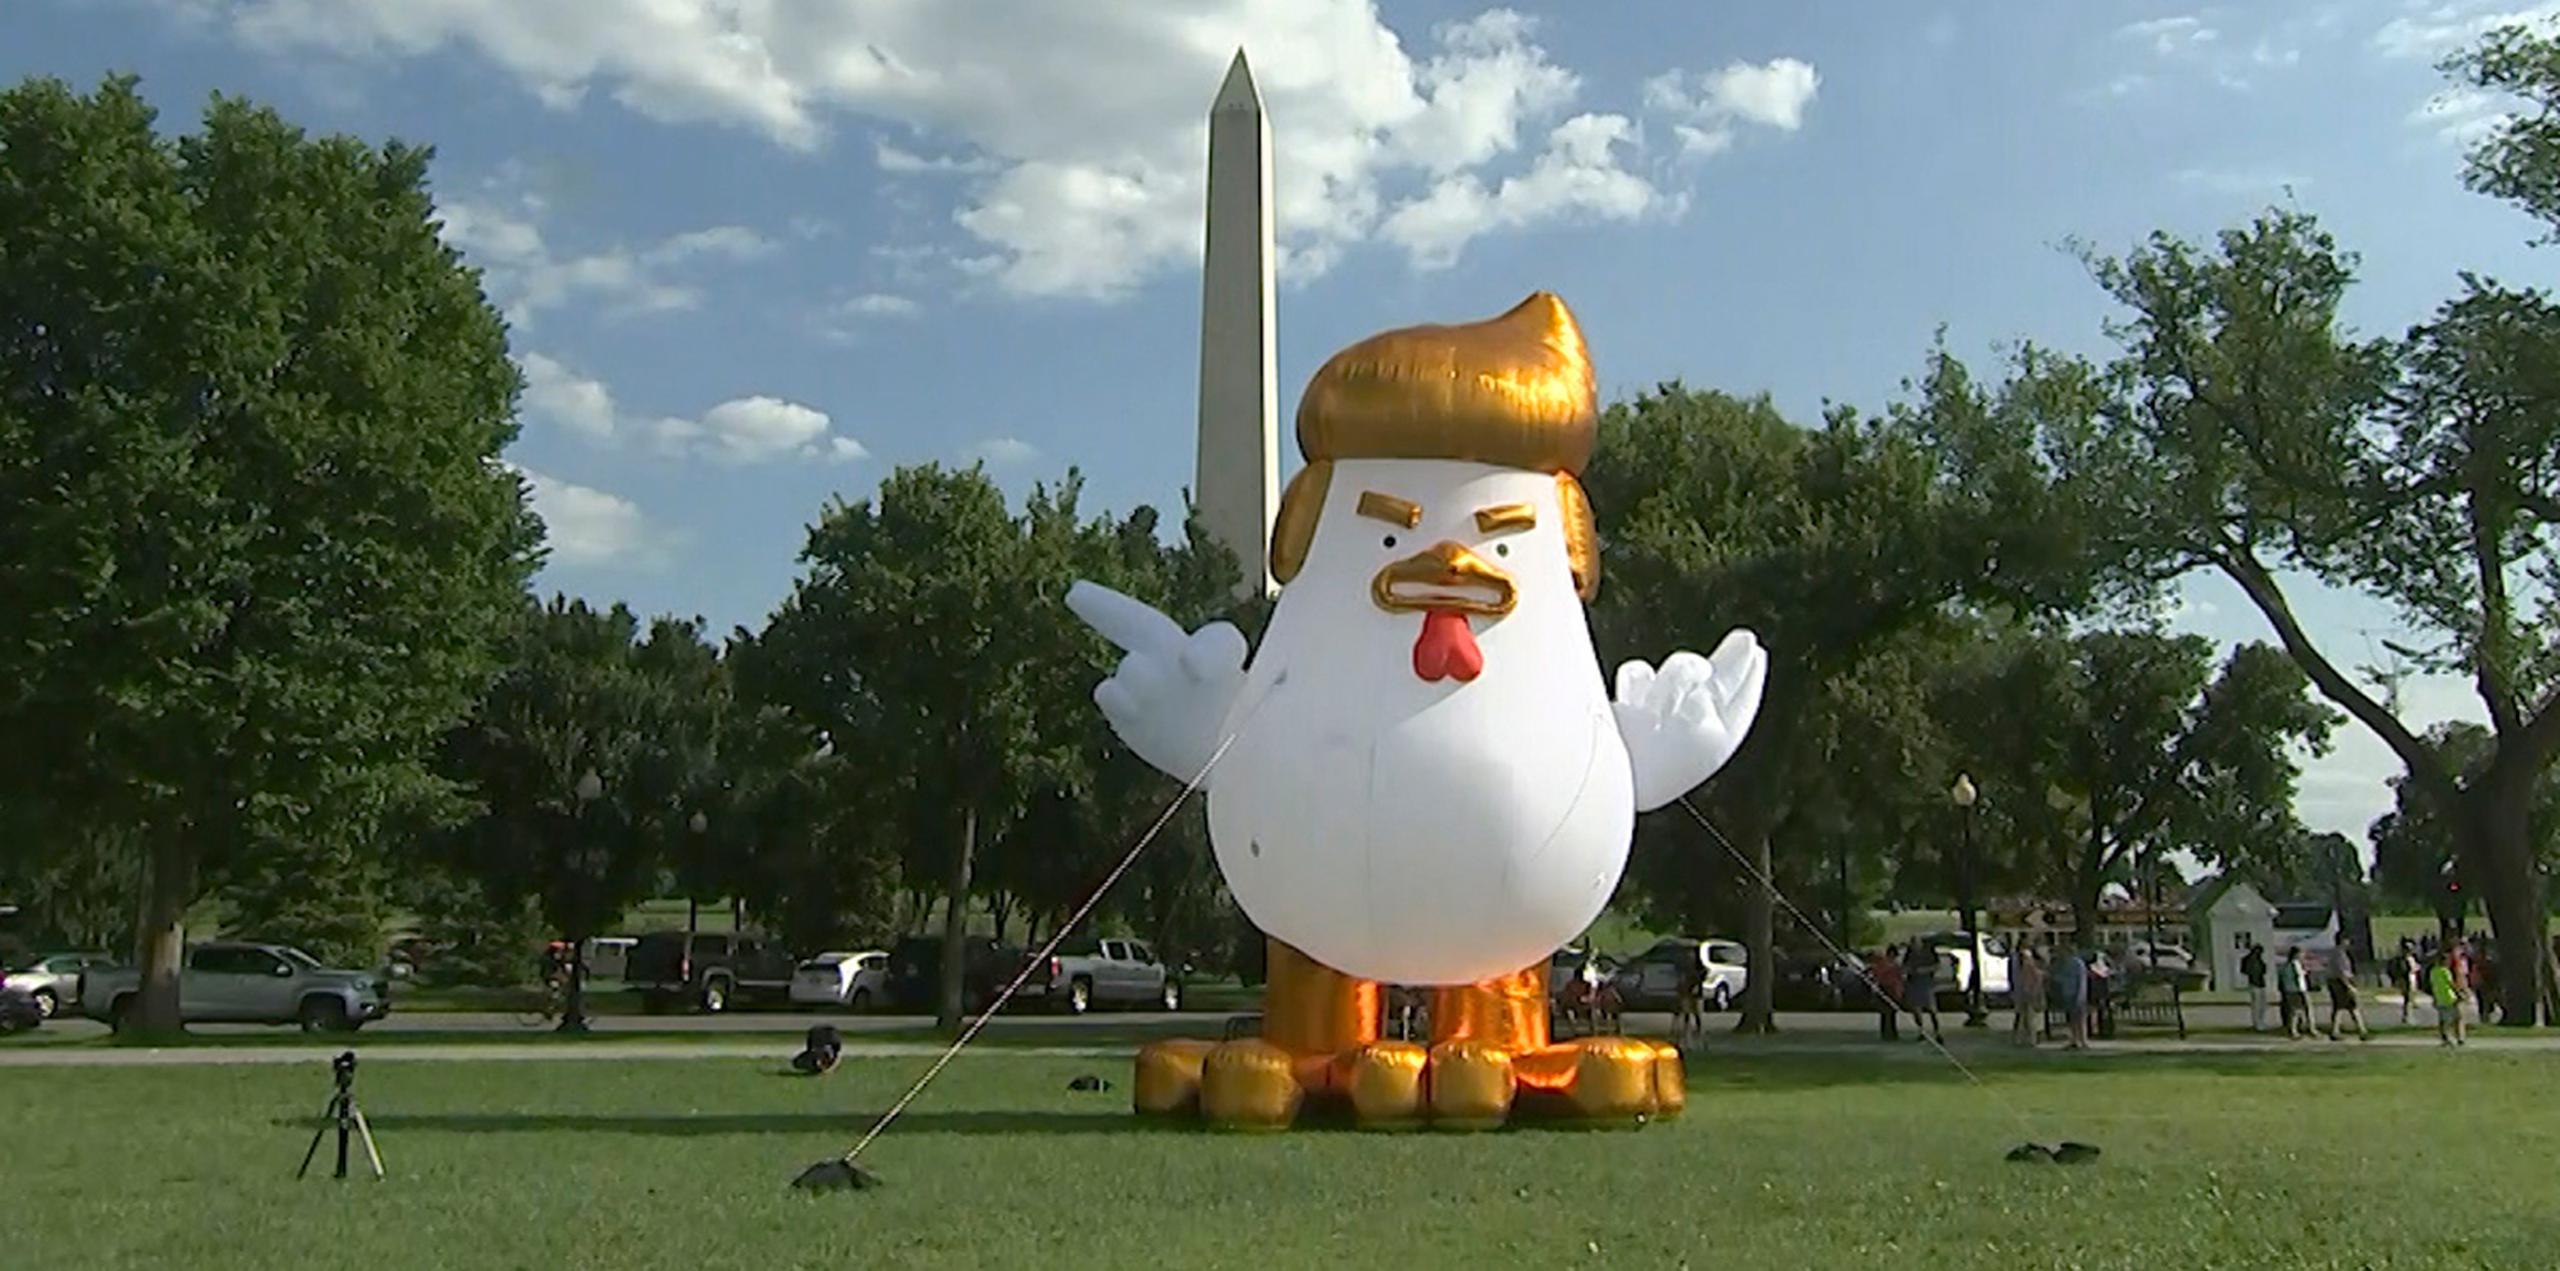 El globo gigante, con el inconfundible peinado del presidente de Estados Unidos, Donald Trump, captó la atención de turistas y cámaras de televisión. (AP)